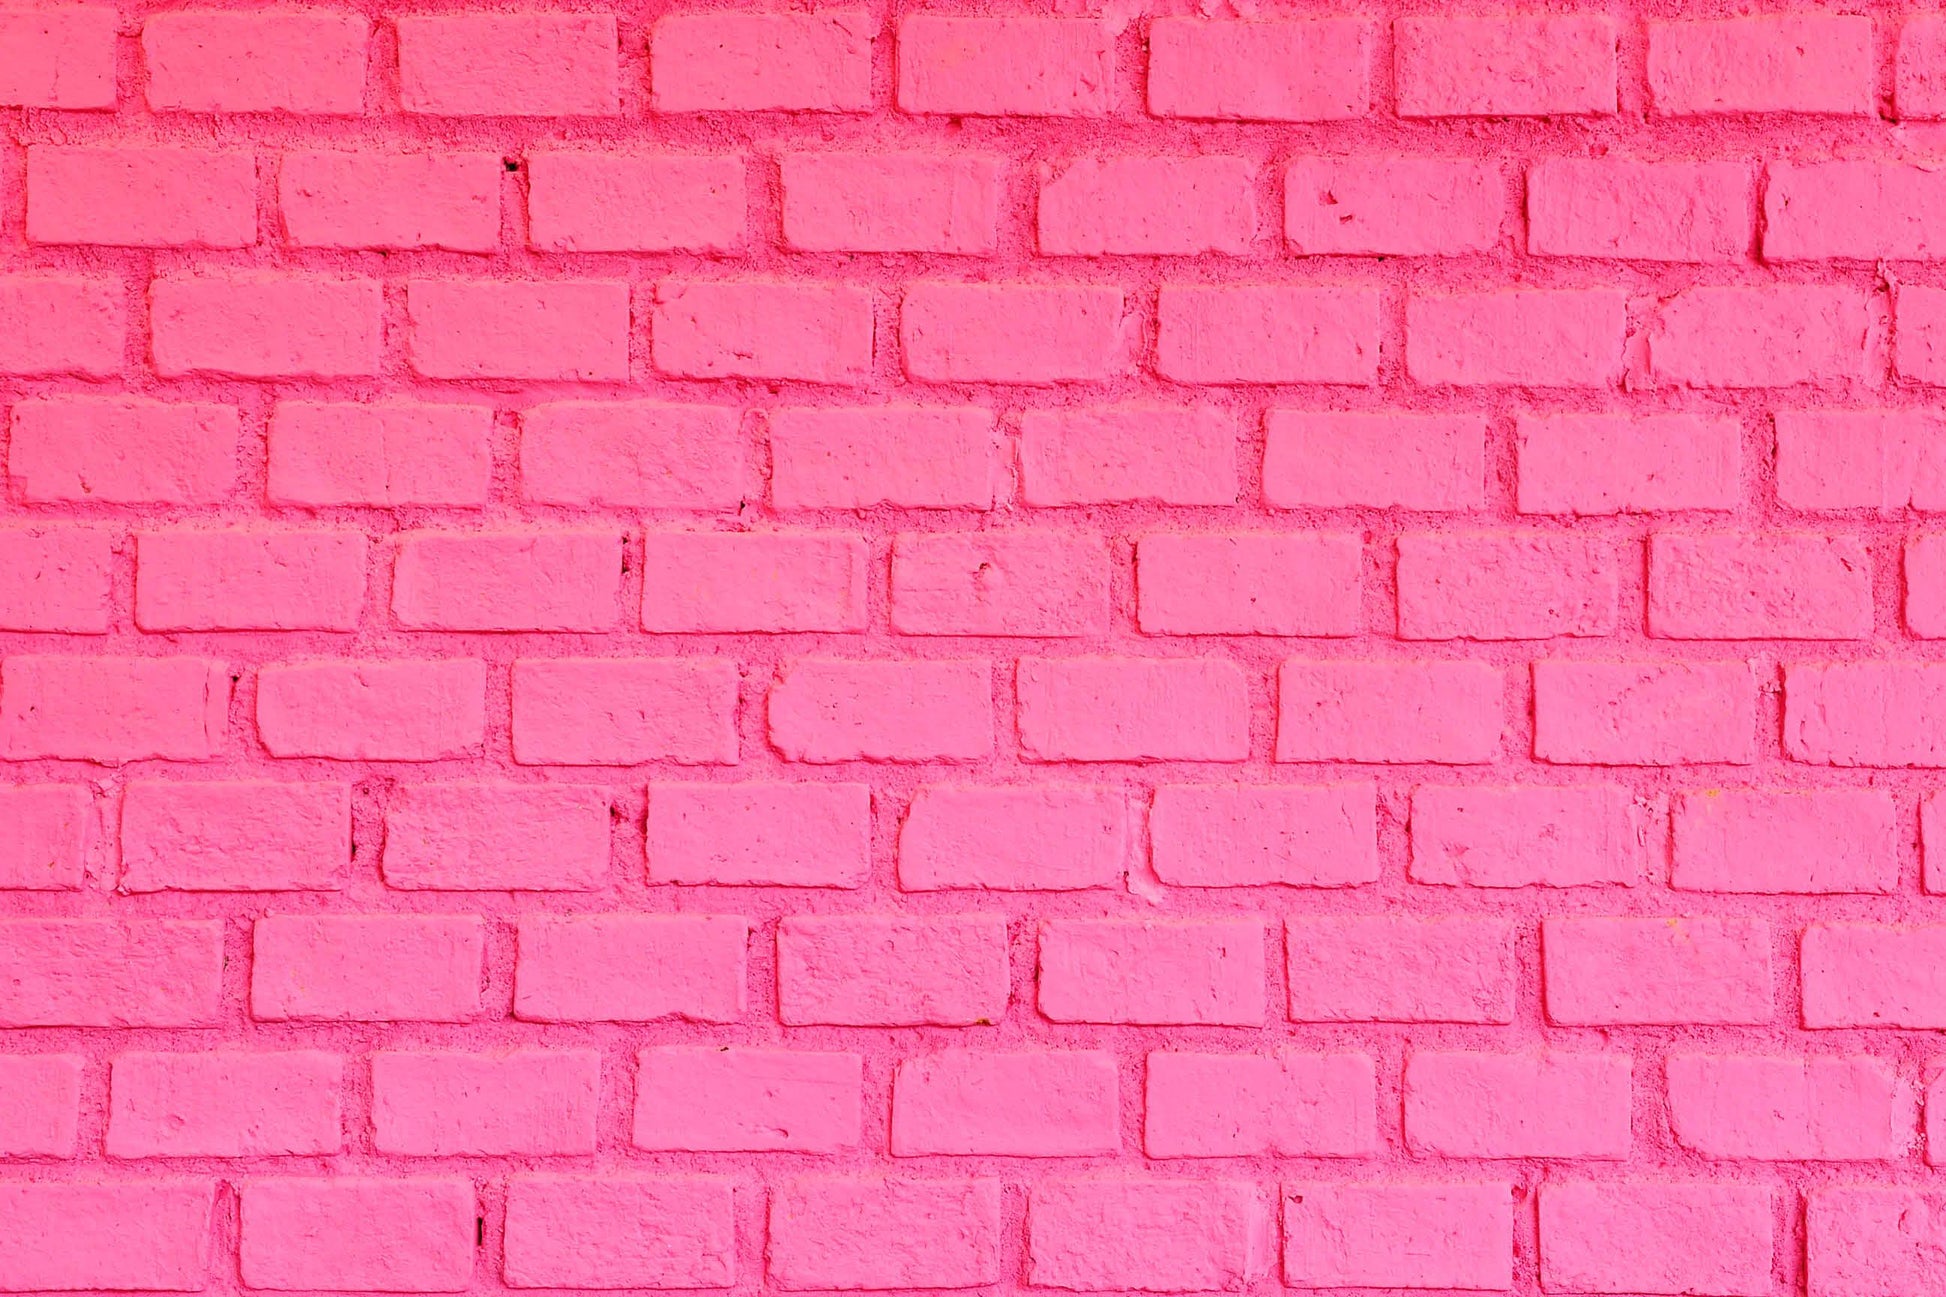 Màn ảnh nền chụp ảnh với tông màu gạch hồng sẽ khiến cho những bức ảnh của bạn trở nên nổi bật hơn và đẹp hơn đấy! Hãy tìm hiểu thêm về sản phẩm này thông qua hình ảnh đầy màu sắc và ấn tượng liên quan đến tông màu gạch hồng.